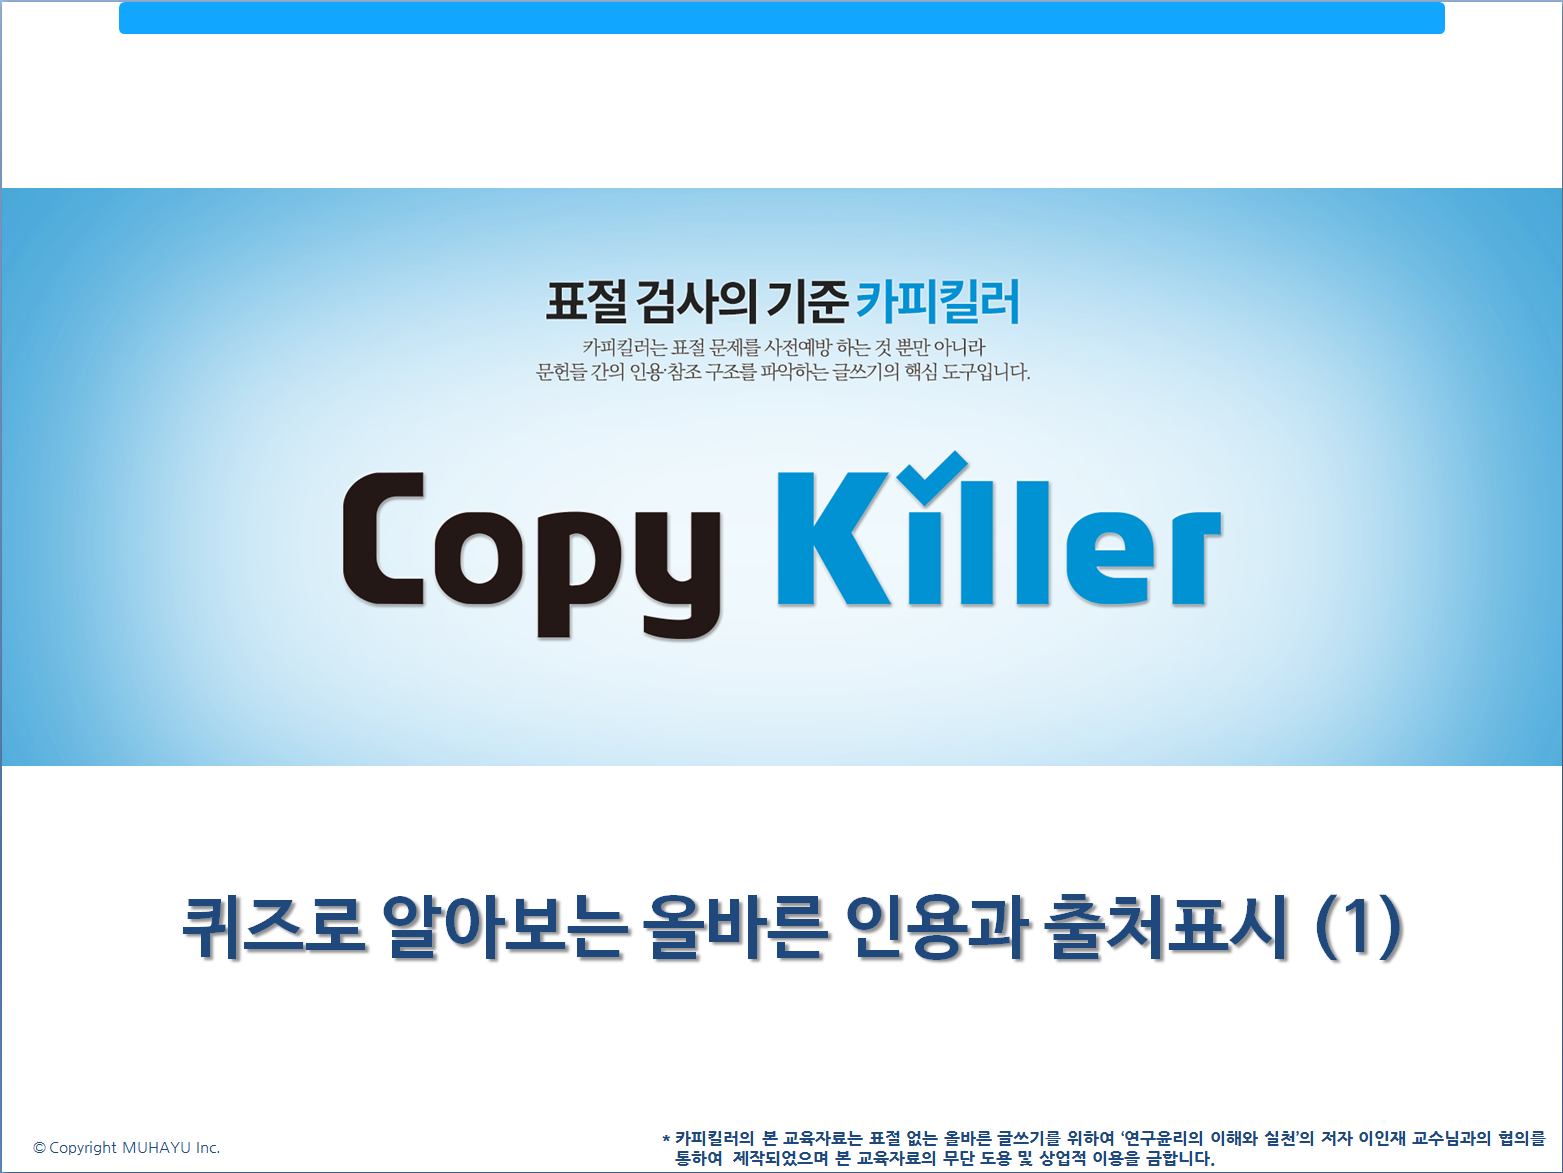 연구윤리퀴즈(1)_copykiller.PNG